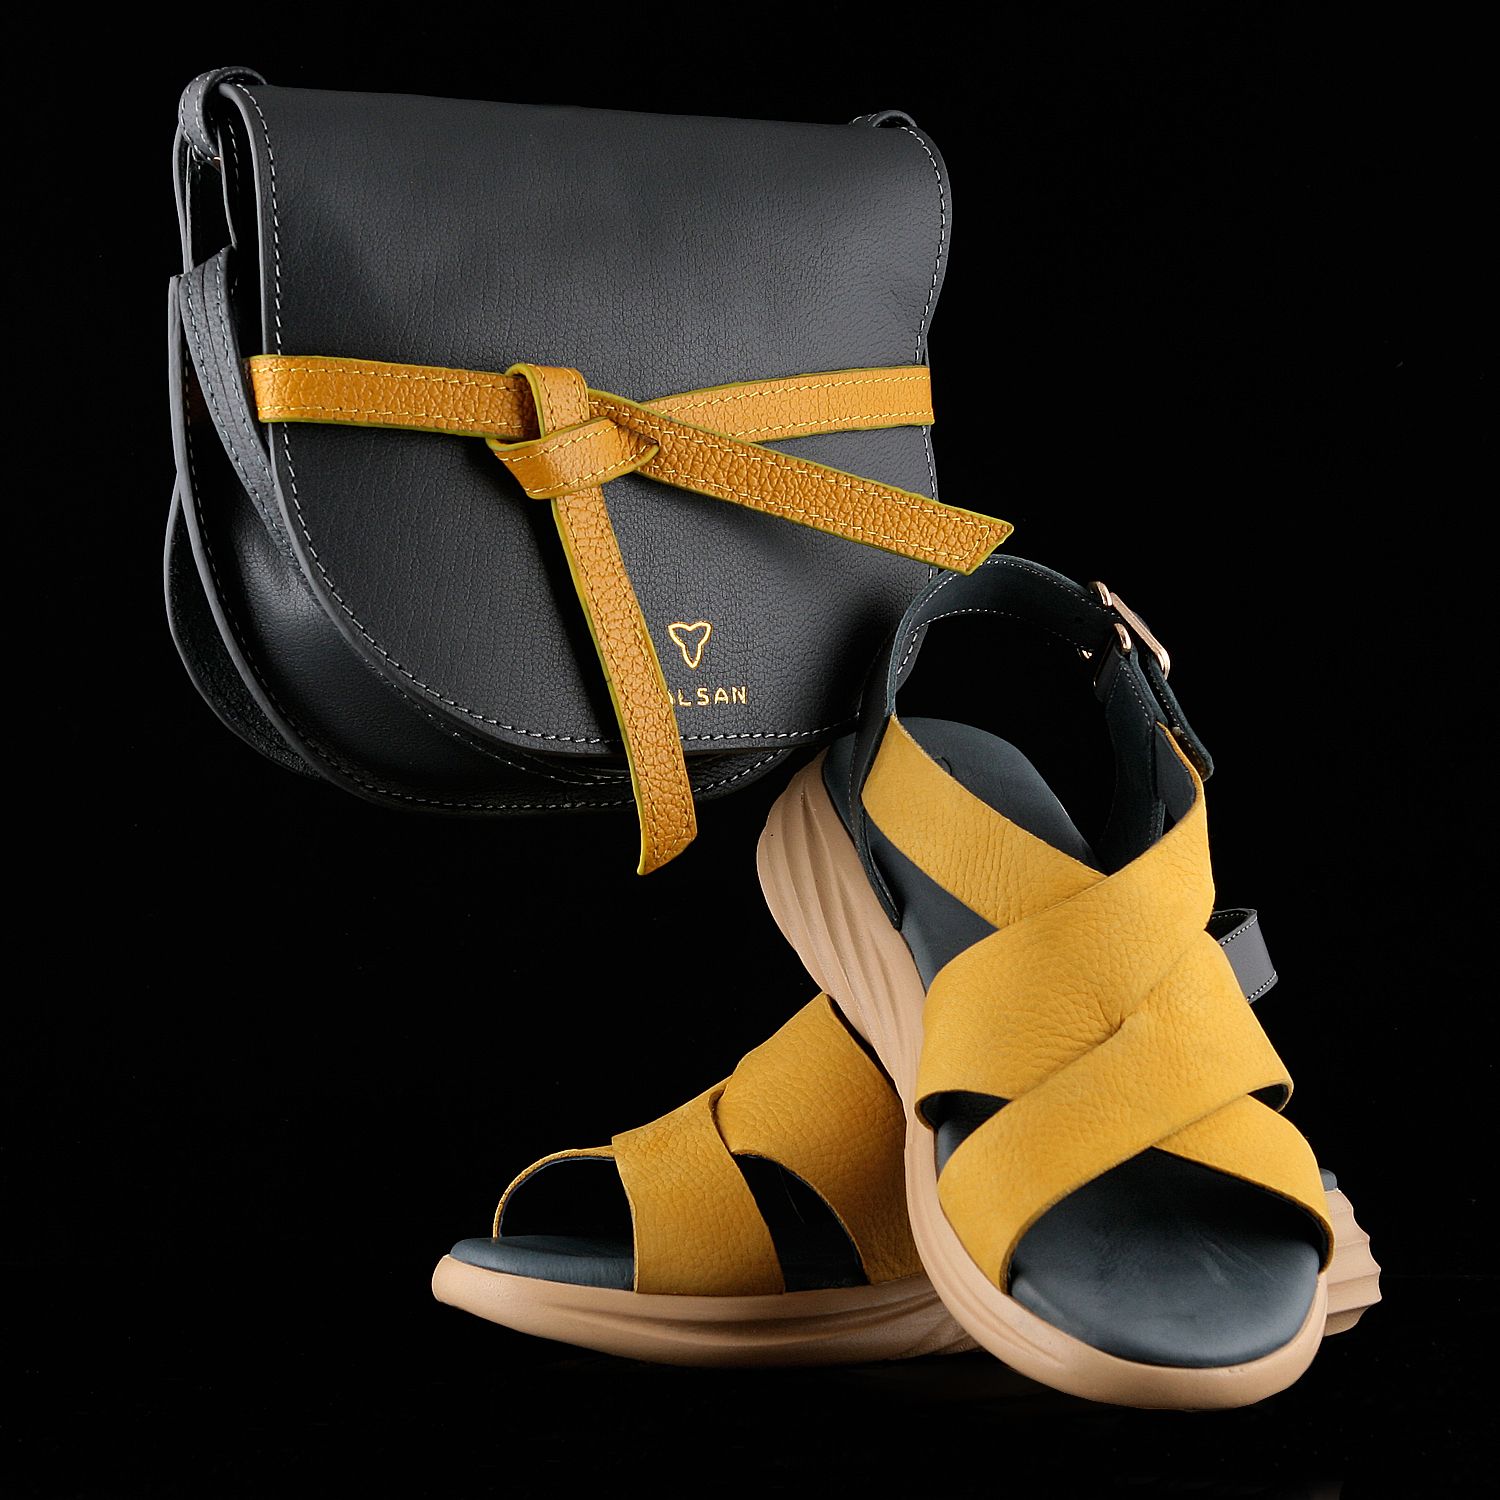 ست کیف و کفش زنانه چرم یلسان مدل برکه کد RICHMOND-GF-903-tos -  - 1